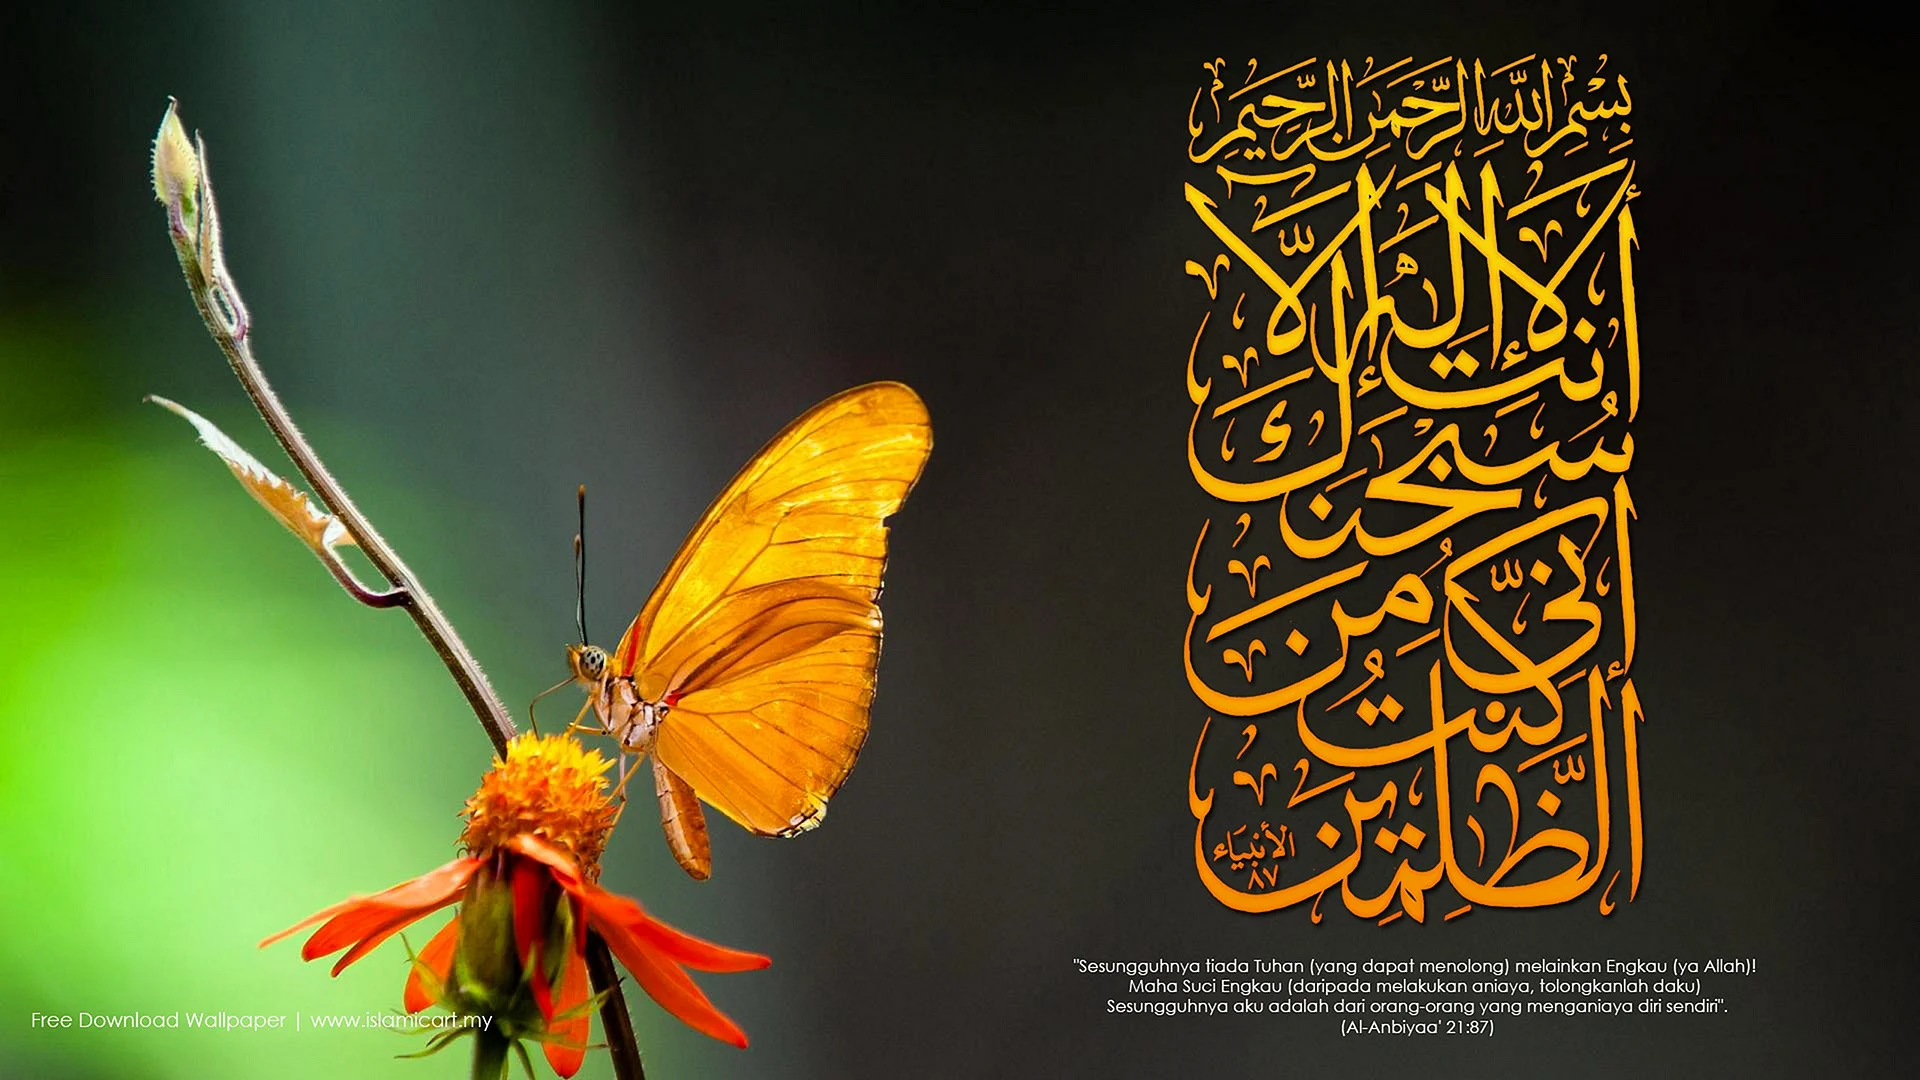 Quranic Verses Wallpaper